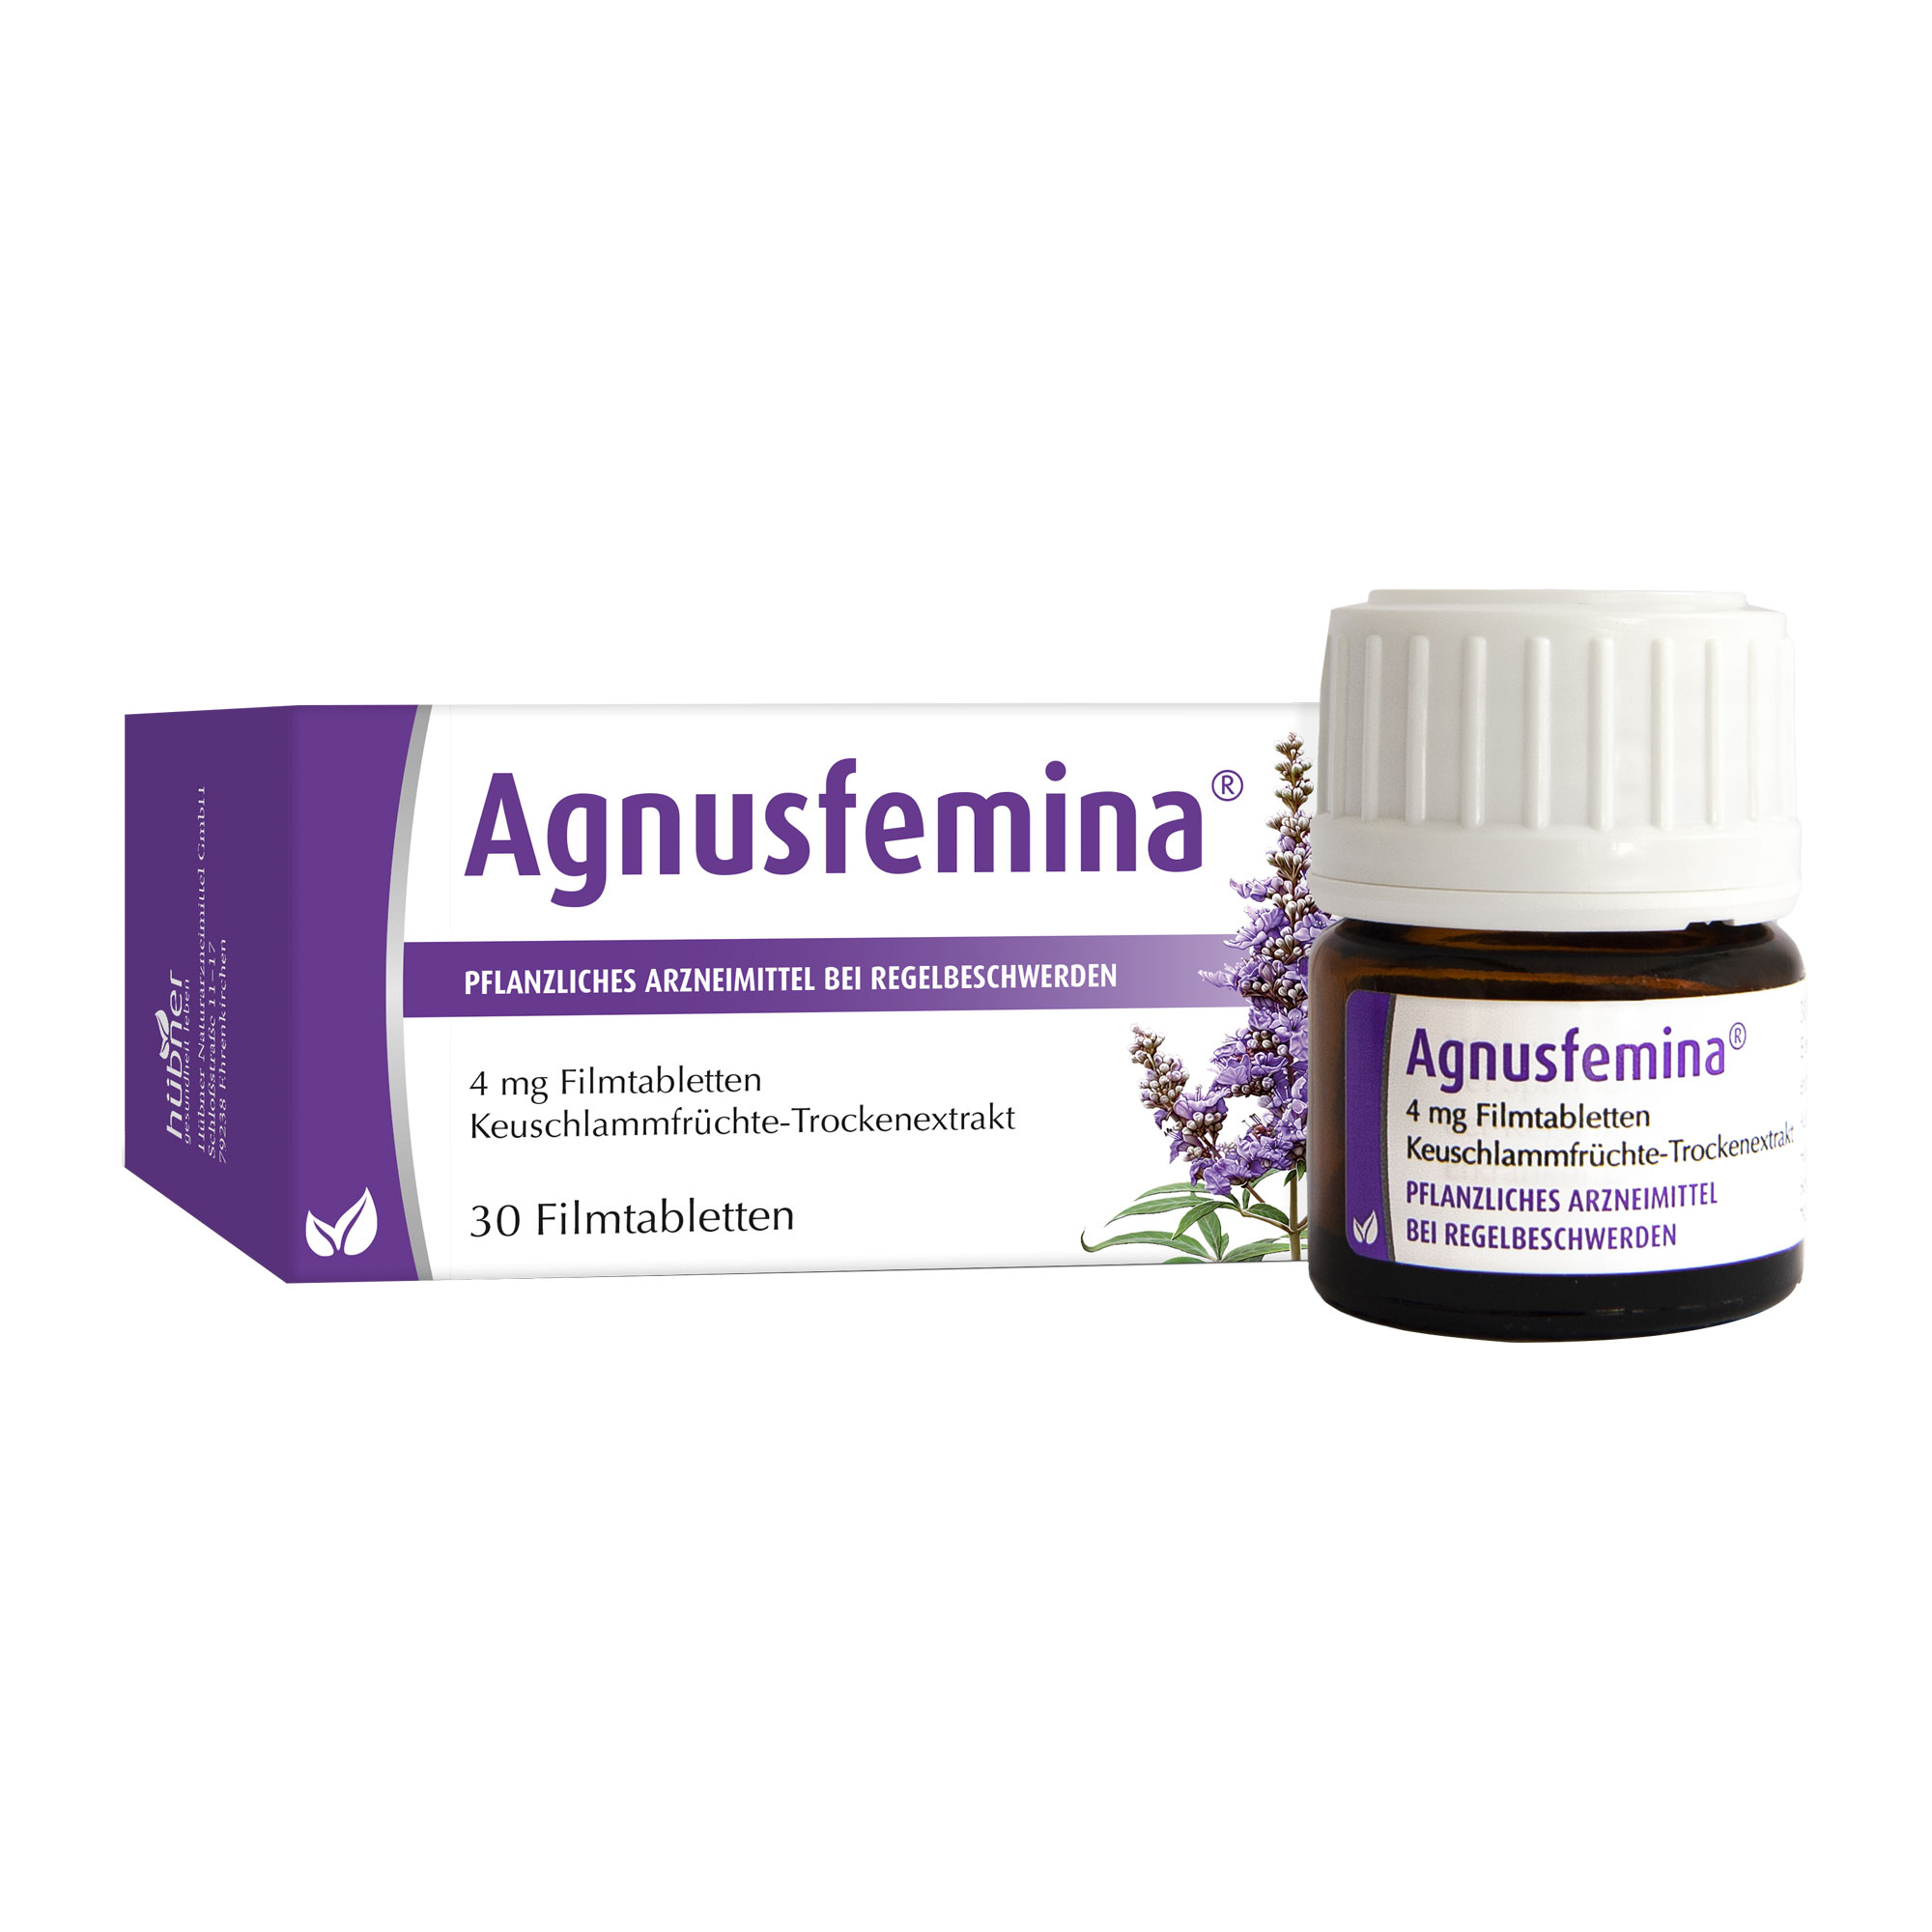 Agnusfemina 4 mg Filmtabletten